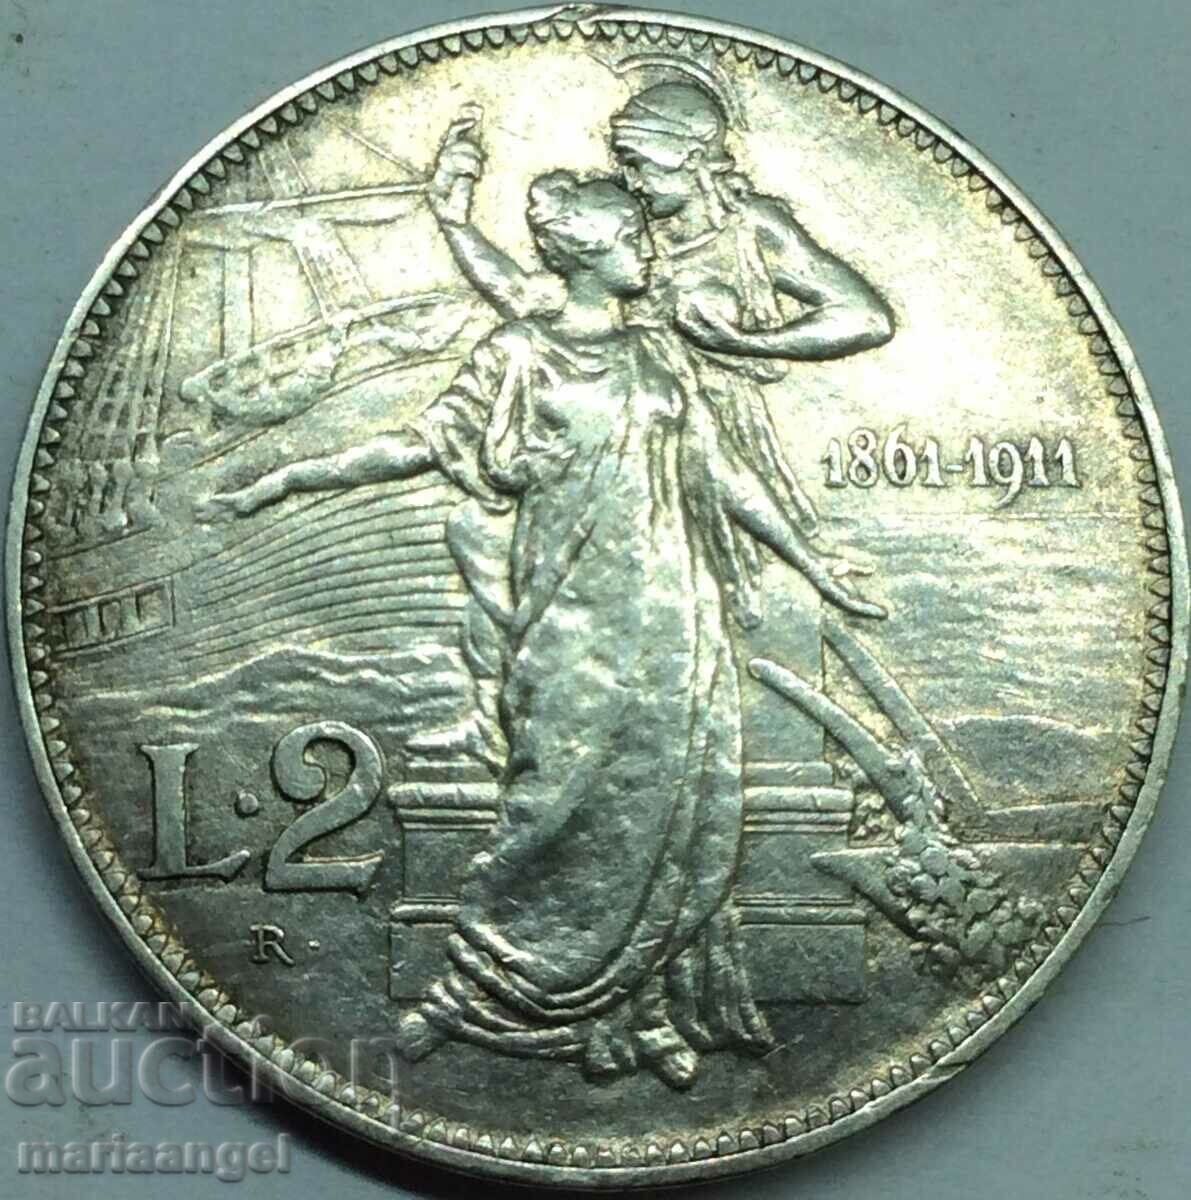 2 Lire 1911 Italy Jubilee 50 Years of Kingdom Silver